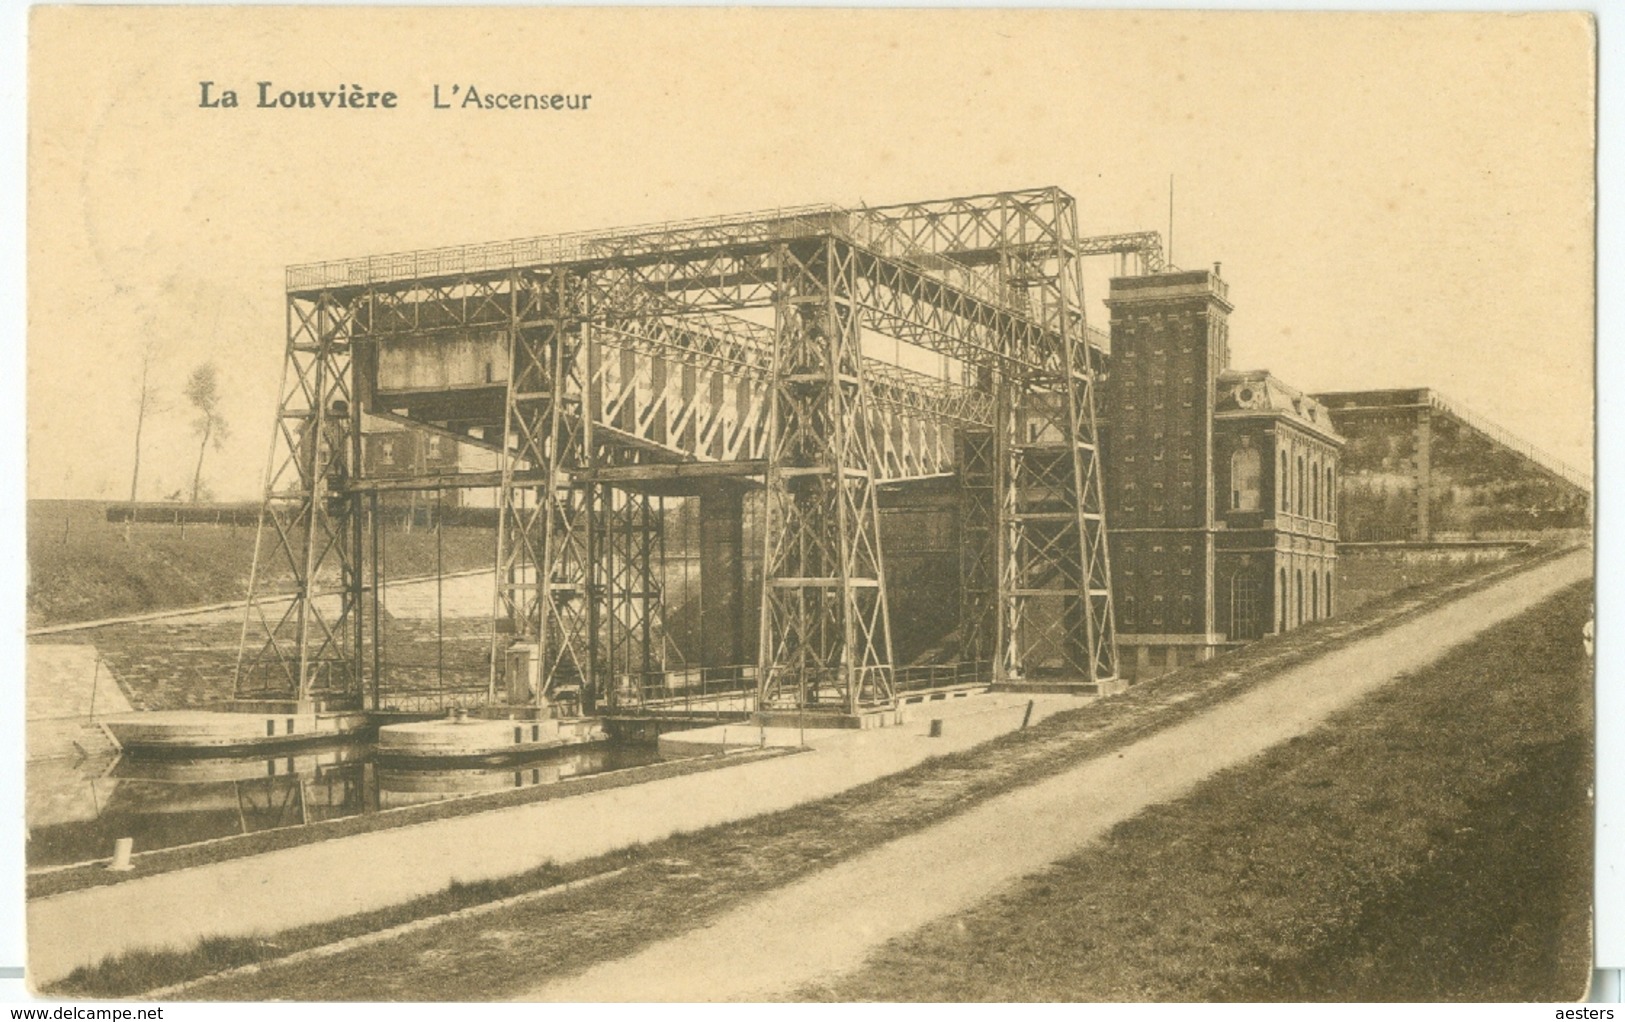 La Louvière 1927; L'Ascenseur - Voyagé. (Belge - Bruxelles) - La Louvière